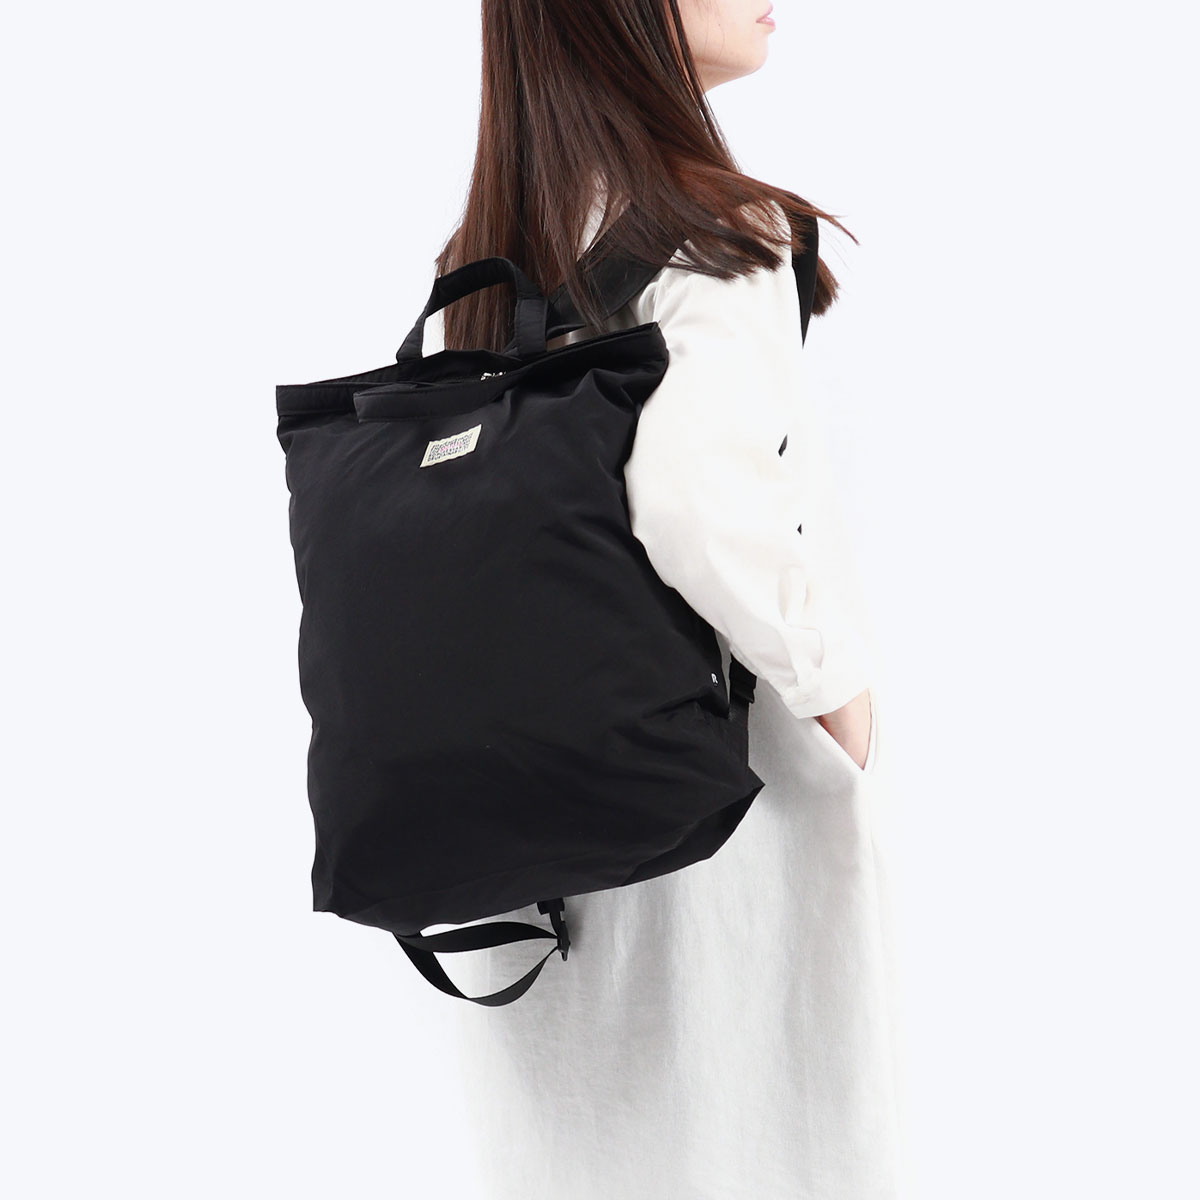  Roo большая сумка рюкзак мужской женский большая вместимость простой чёрный ROOTOTE casual легкий бренд 2WAY большая сумка складной B4 A4 1271